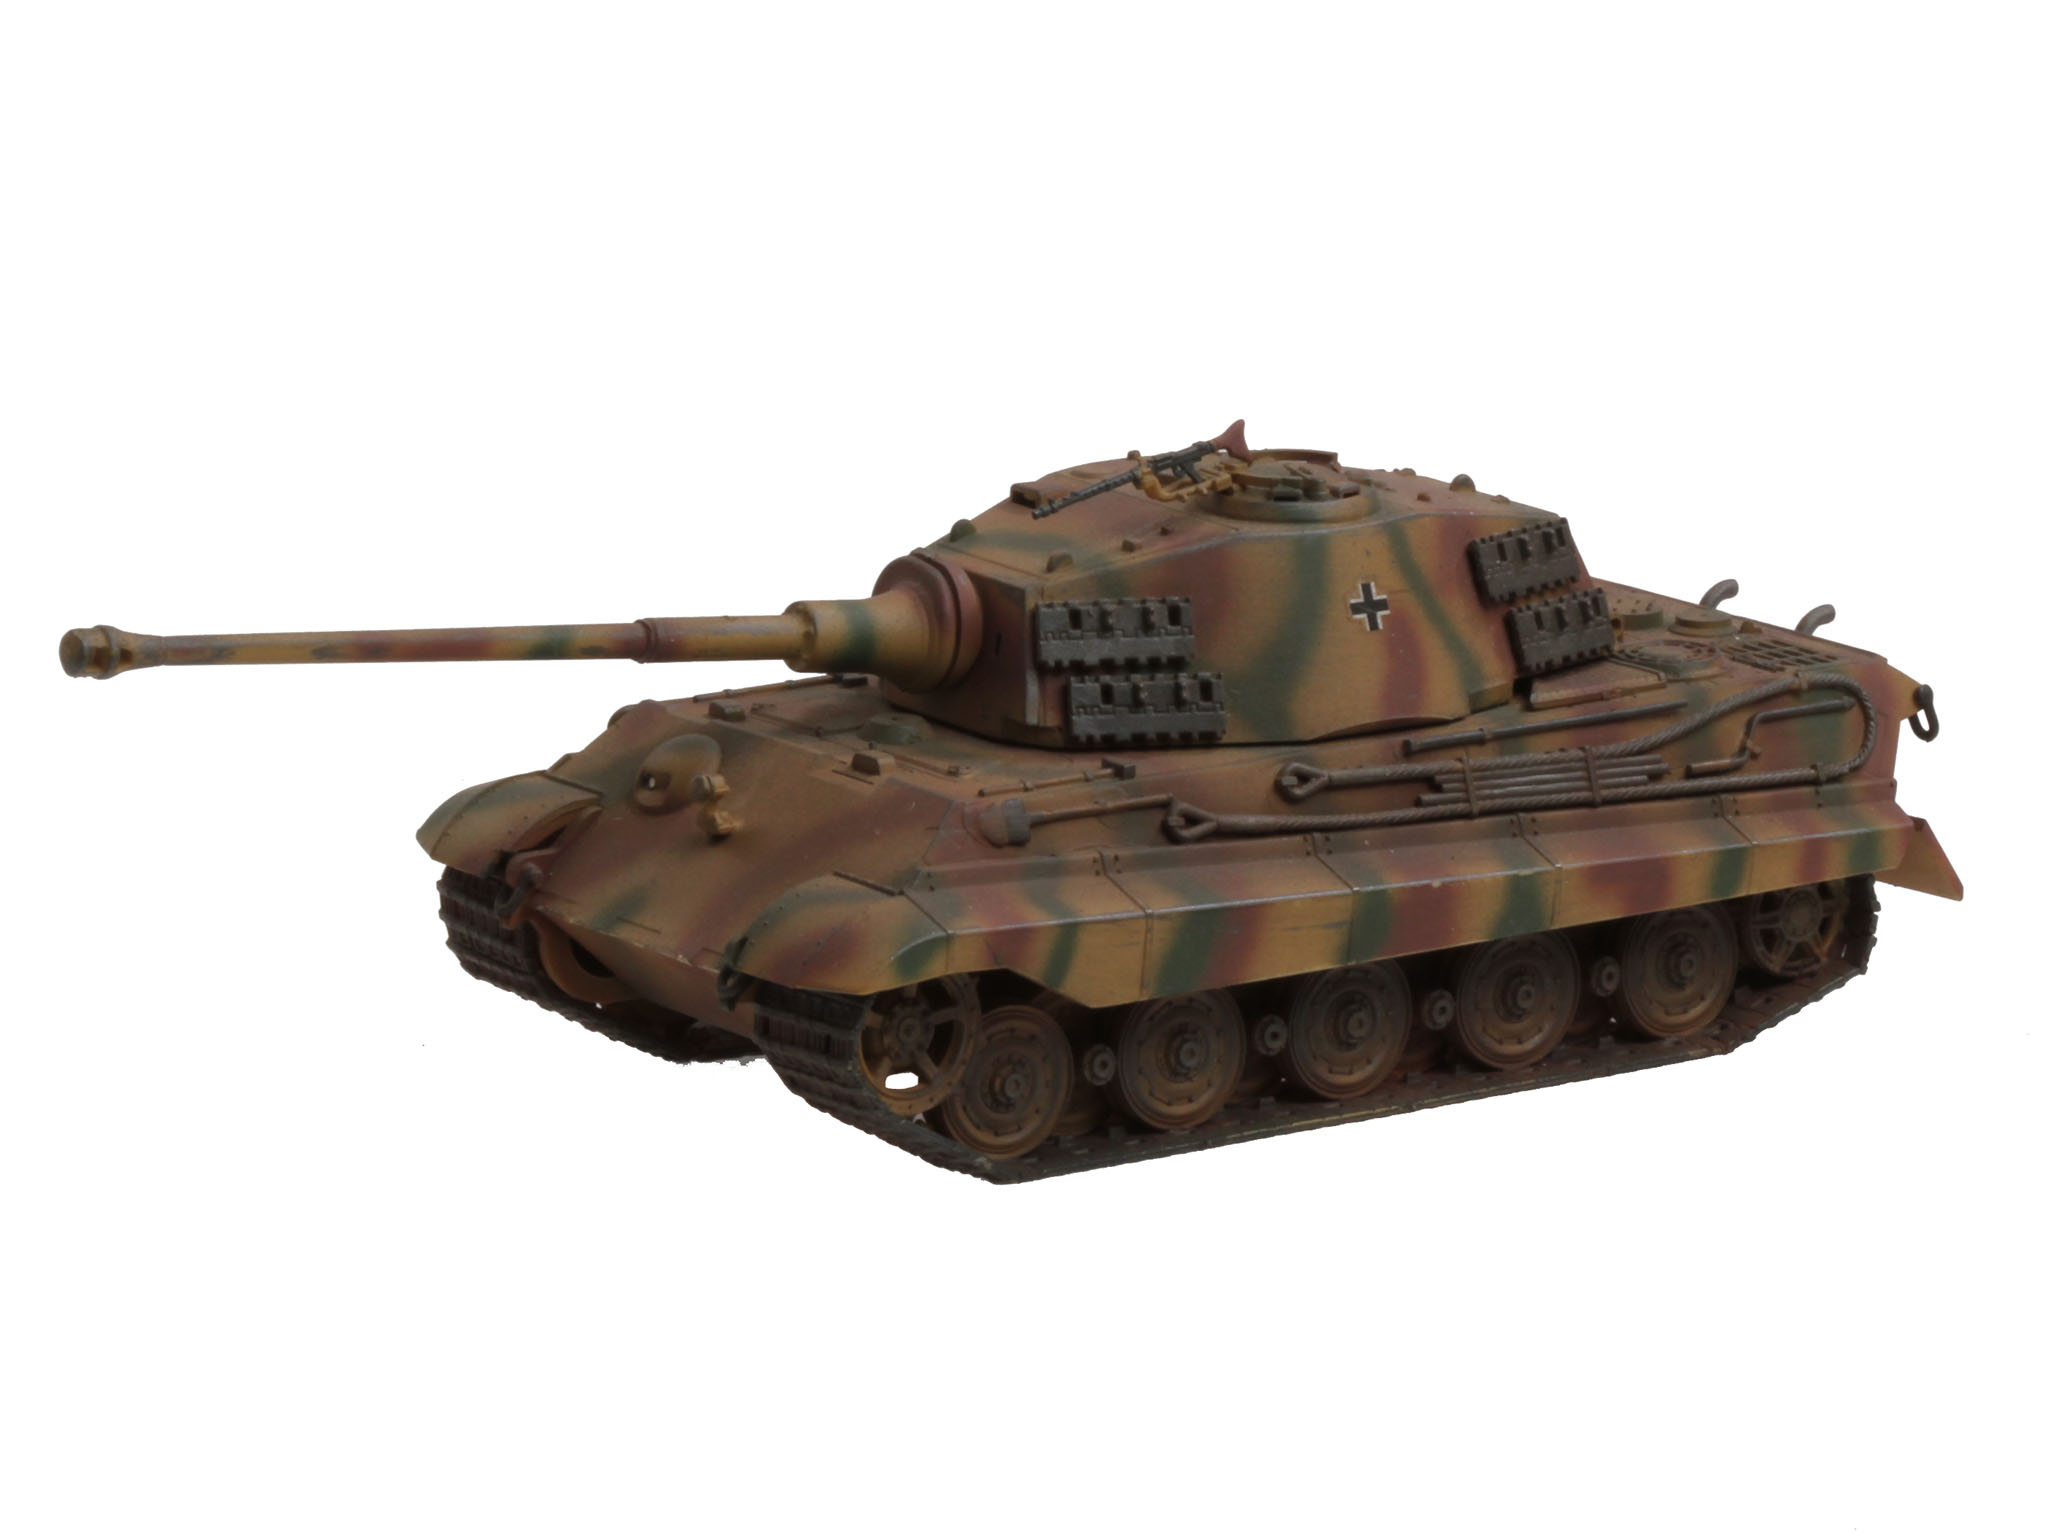 PzKpfw VI Königstige - Tiger II Ausf. B